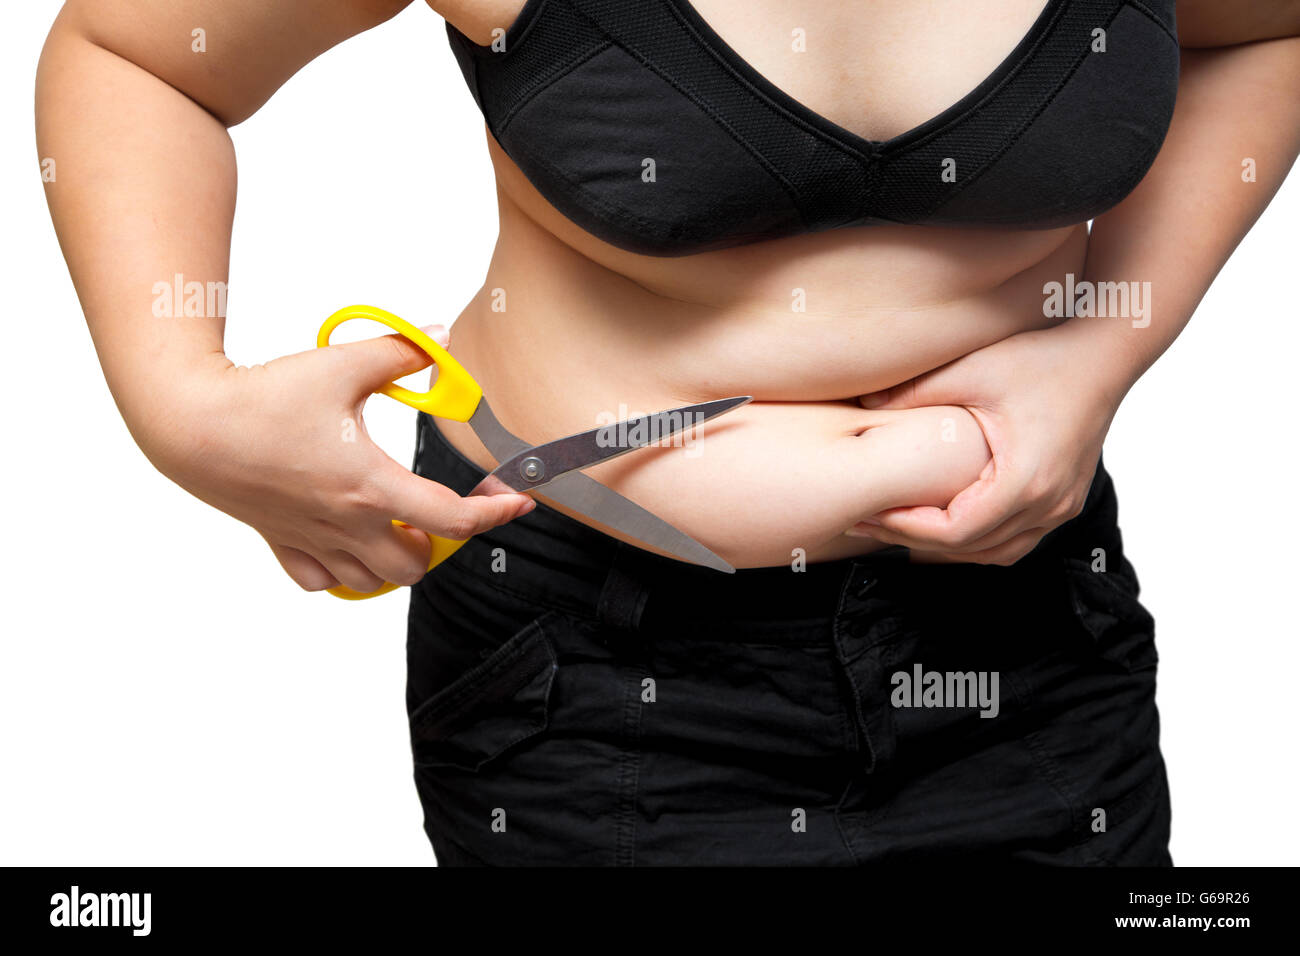 Grasso donna taglia l'obesità pancia e cellulite mediante forbici perdita di peso concept Foto Stock